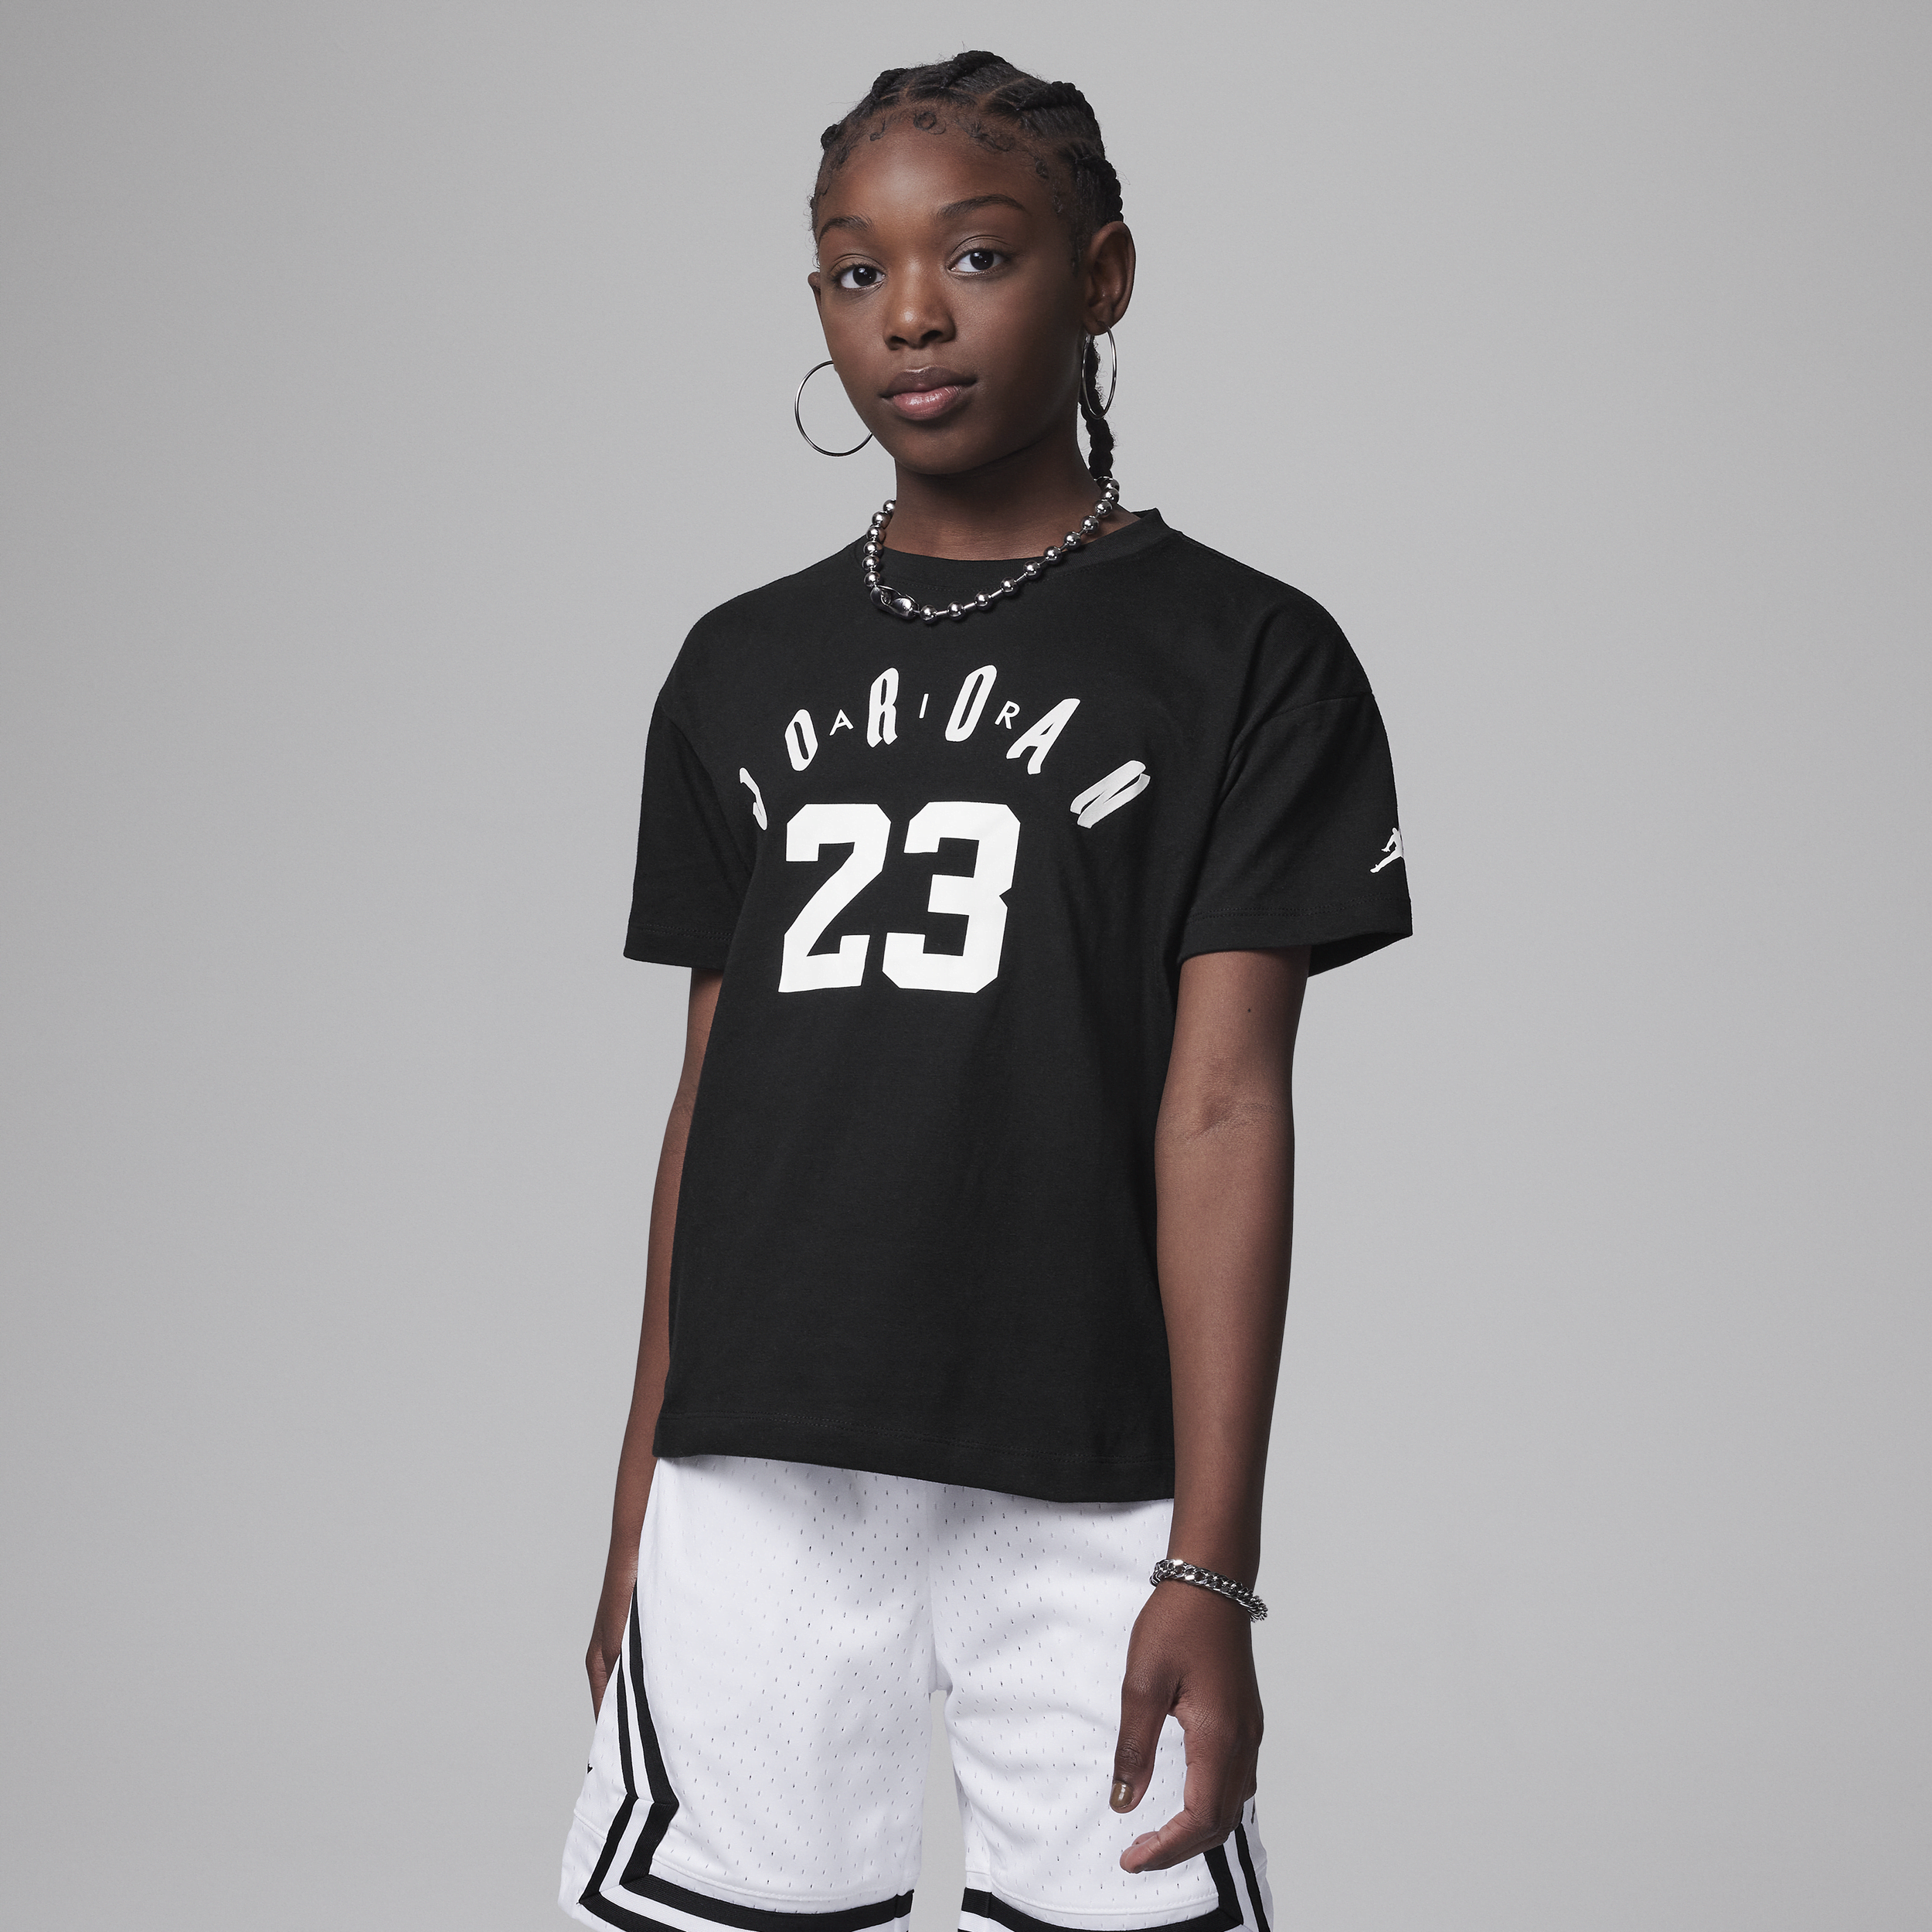 Jordan 23 Soft Touch Tee T-shirt voor kids Zwart